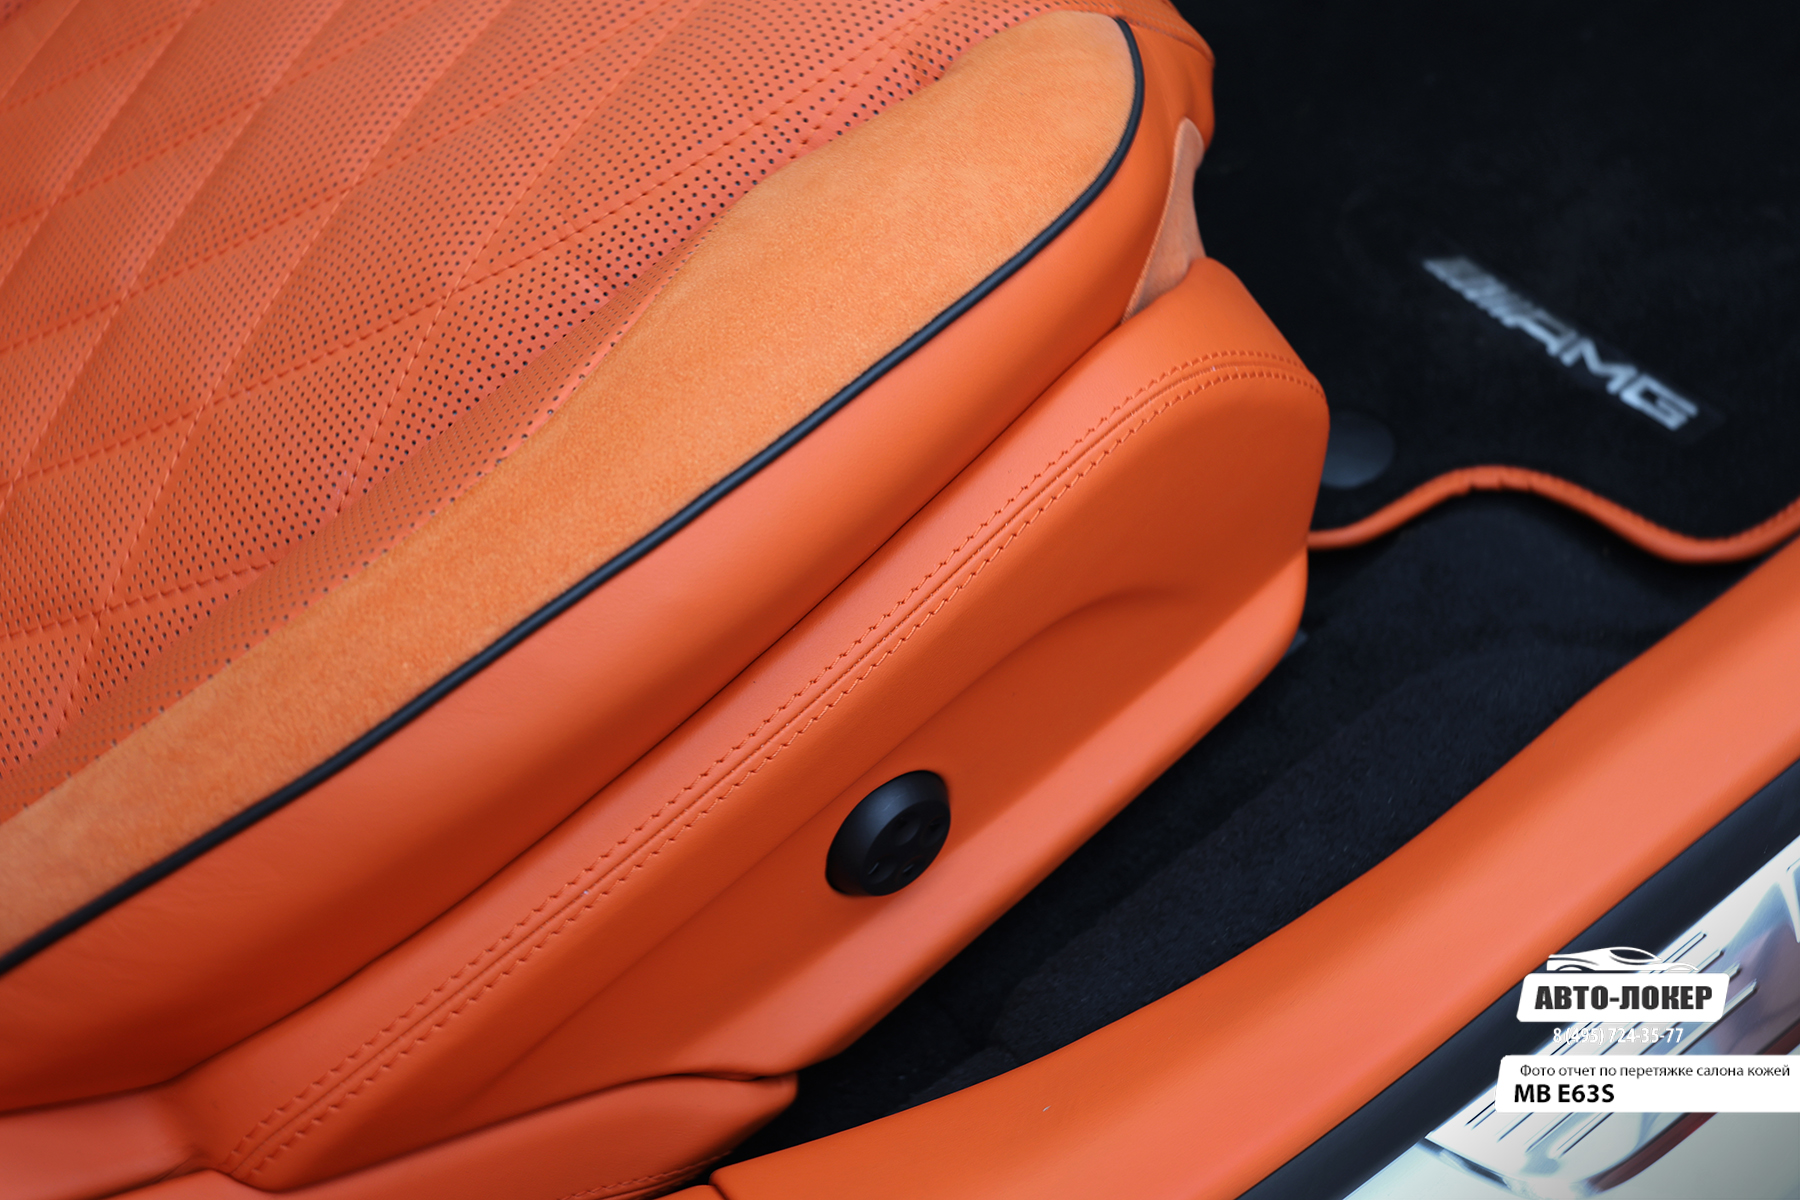 Перетяжка низа сидений и порогов салона MB E63S (W213) оранжевой кожей